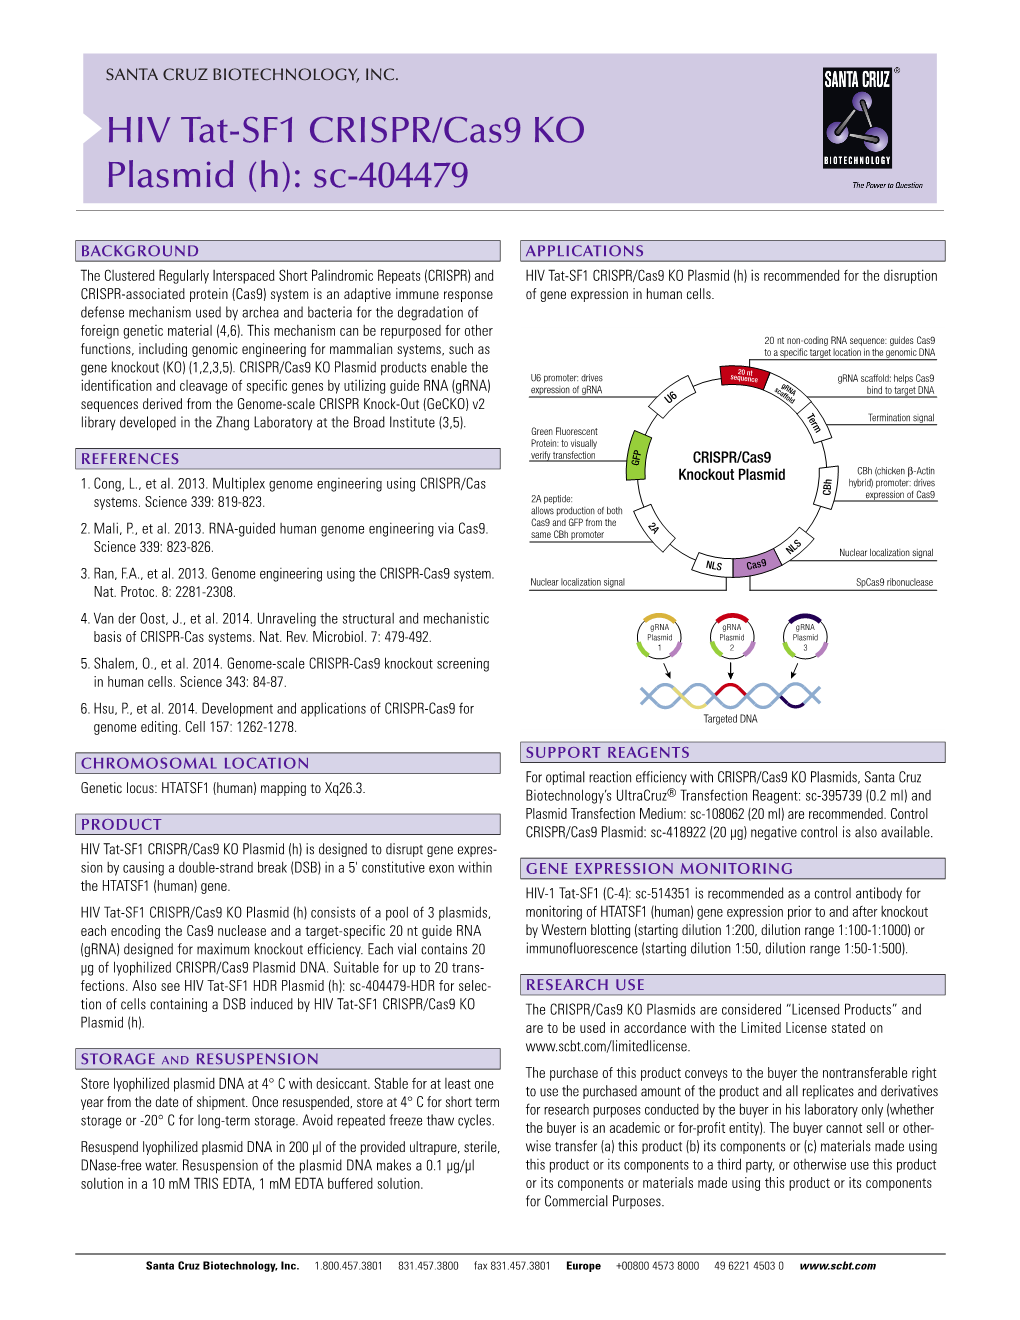 HIV Tat-SF1 CRISPR/Cas9 KO Plasmid (H): Sc-404479